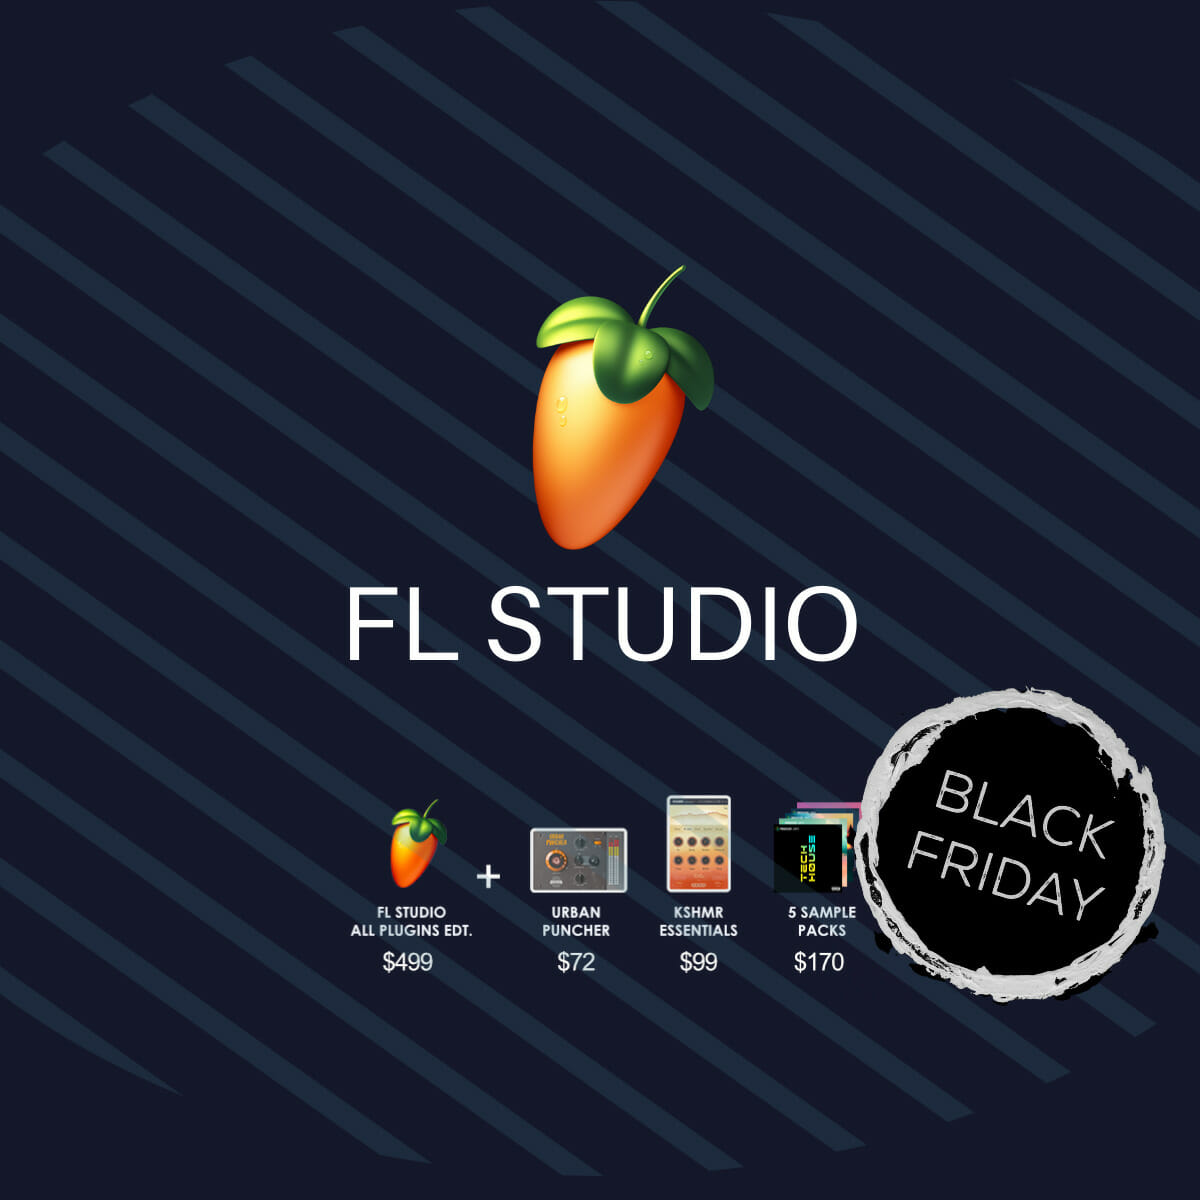 Las mejores ofertas de FL Studio [UP to $400 OFF]